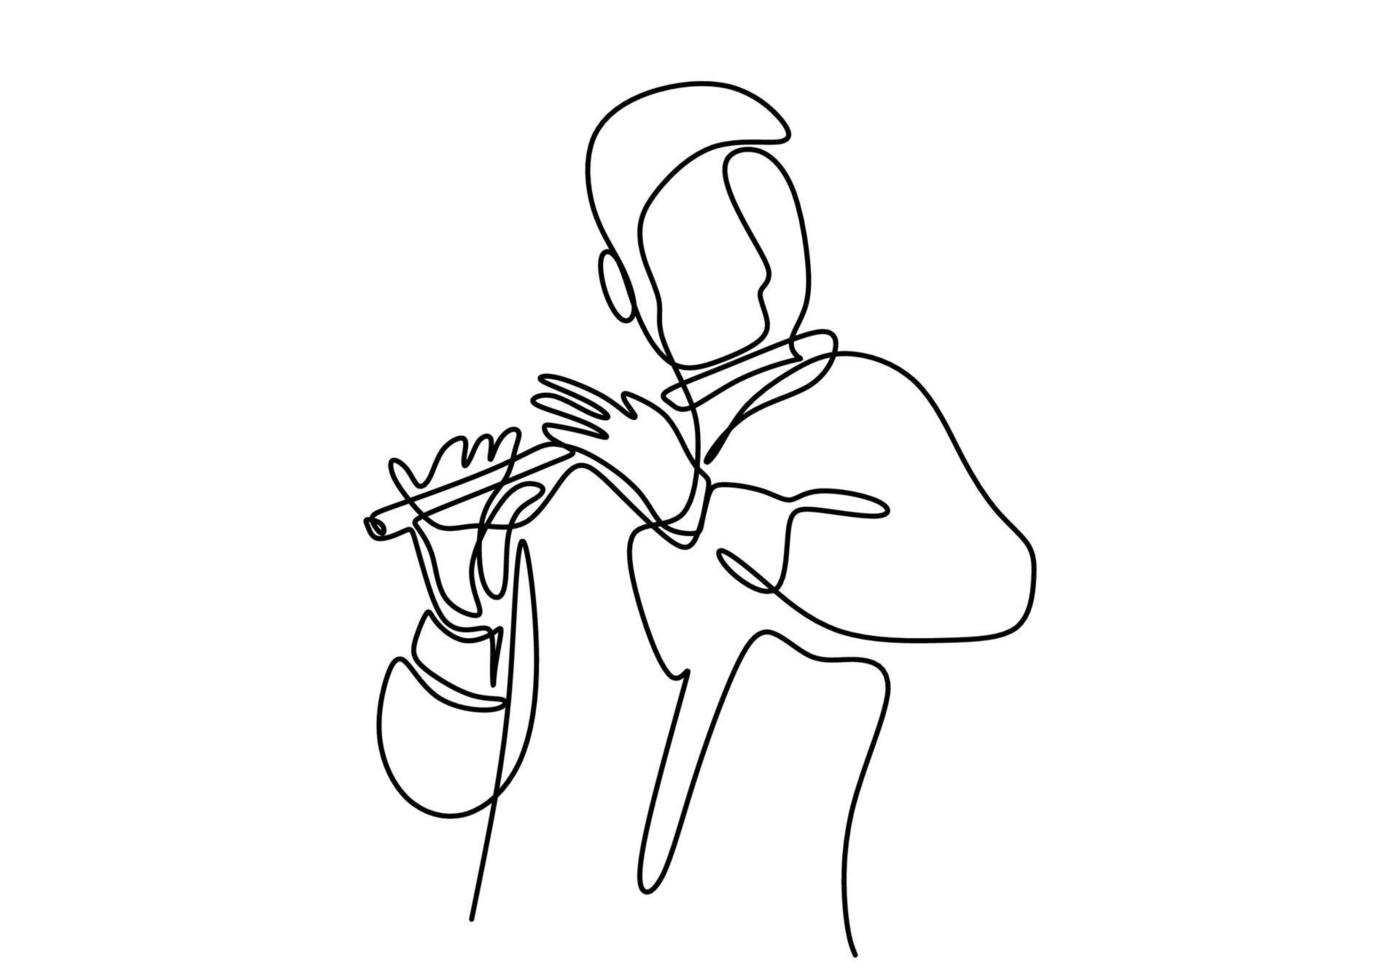 en kontinuerlig linjeteckning av en man som spelar flöjt. musiken uppträder med bambuflöjt isolerad på vit bakgrund. vektor